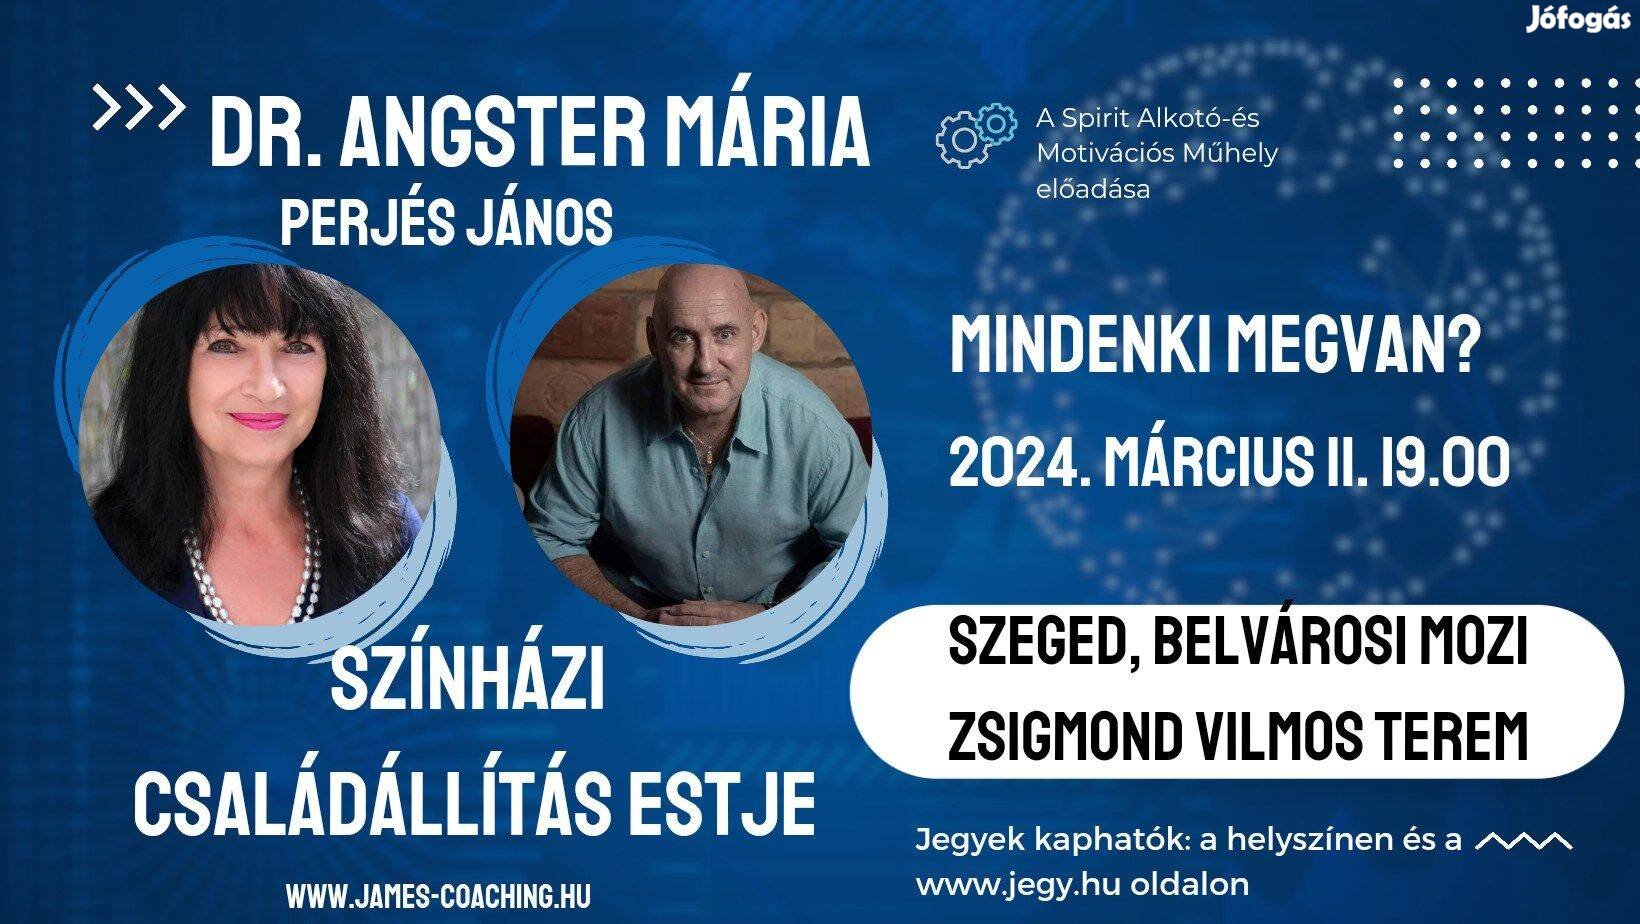 Dr Angster Mária családállító zenés-színházi est - Szeged, március 11